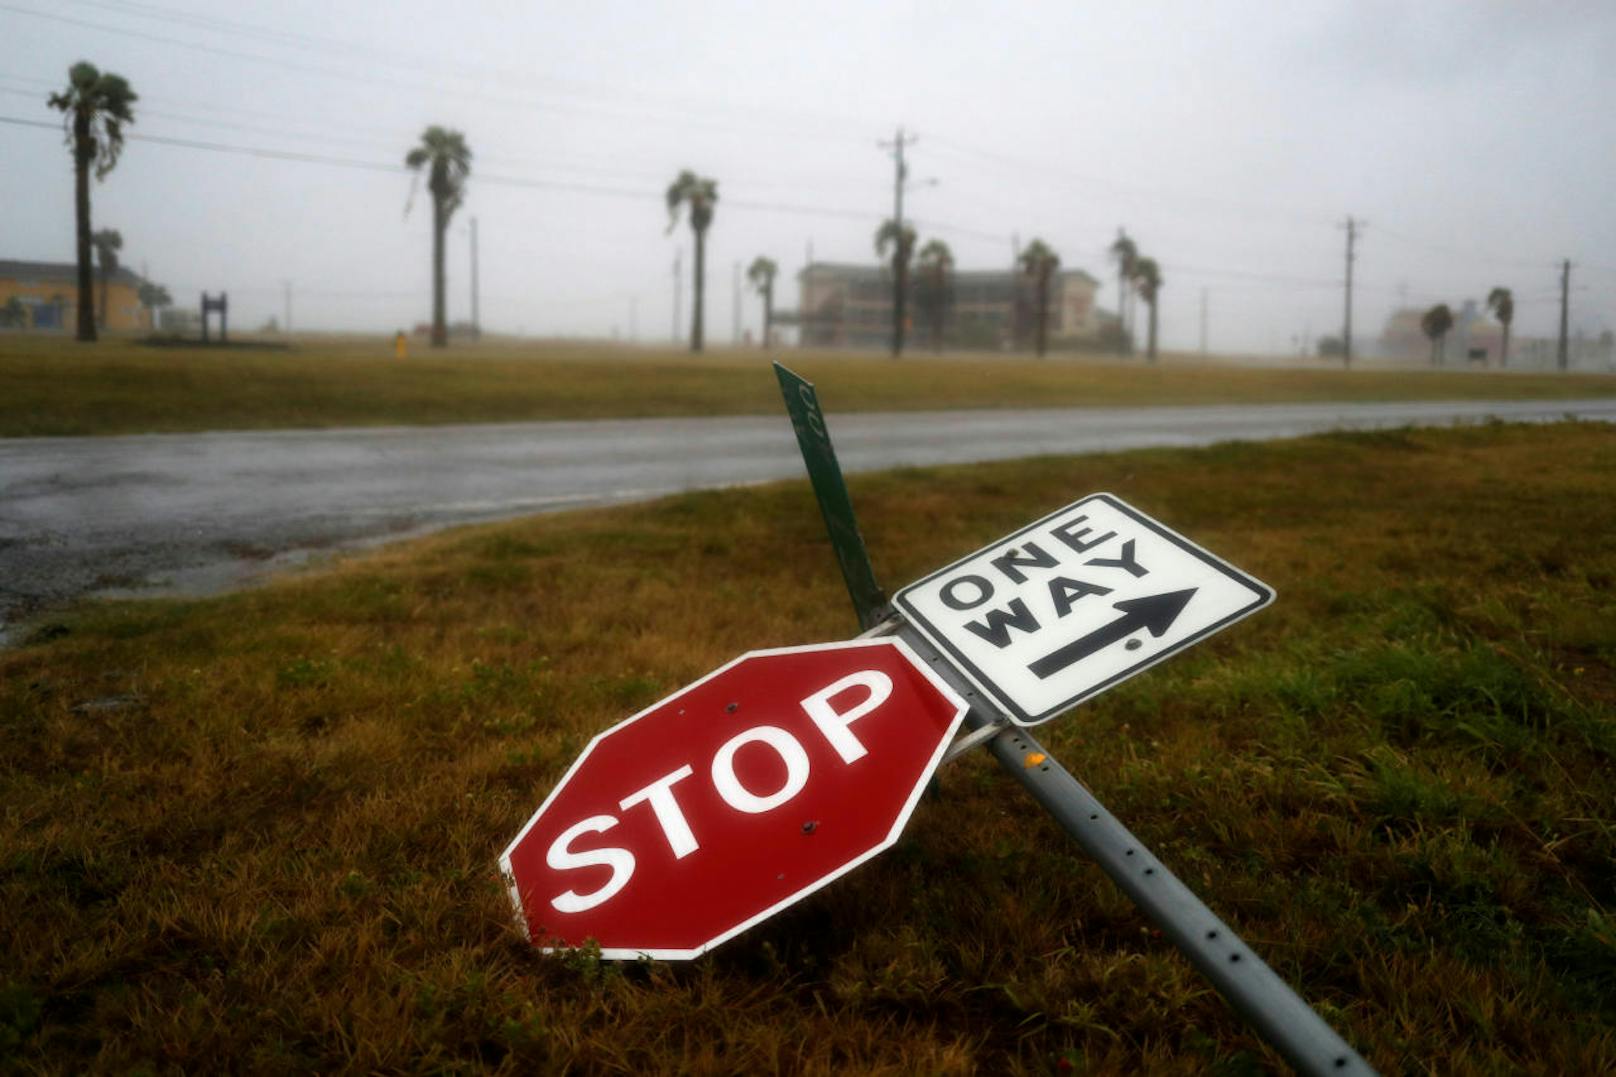 "Harvey", der Hurrikan der Stufe 4 hat Texas erreicht. Mit Fluten und Sturmwinden von bis zu 215 Stundenkilometern sorgt er für zahlreiche Verwüstungen. Der Katastrophenzustand wurde bereits ausgerufen.